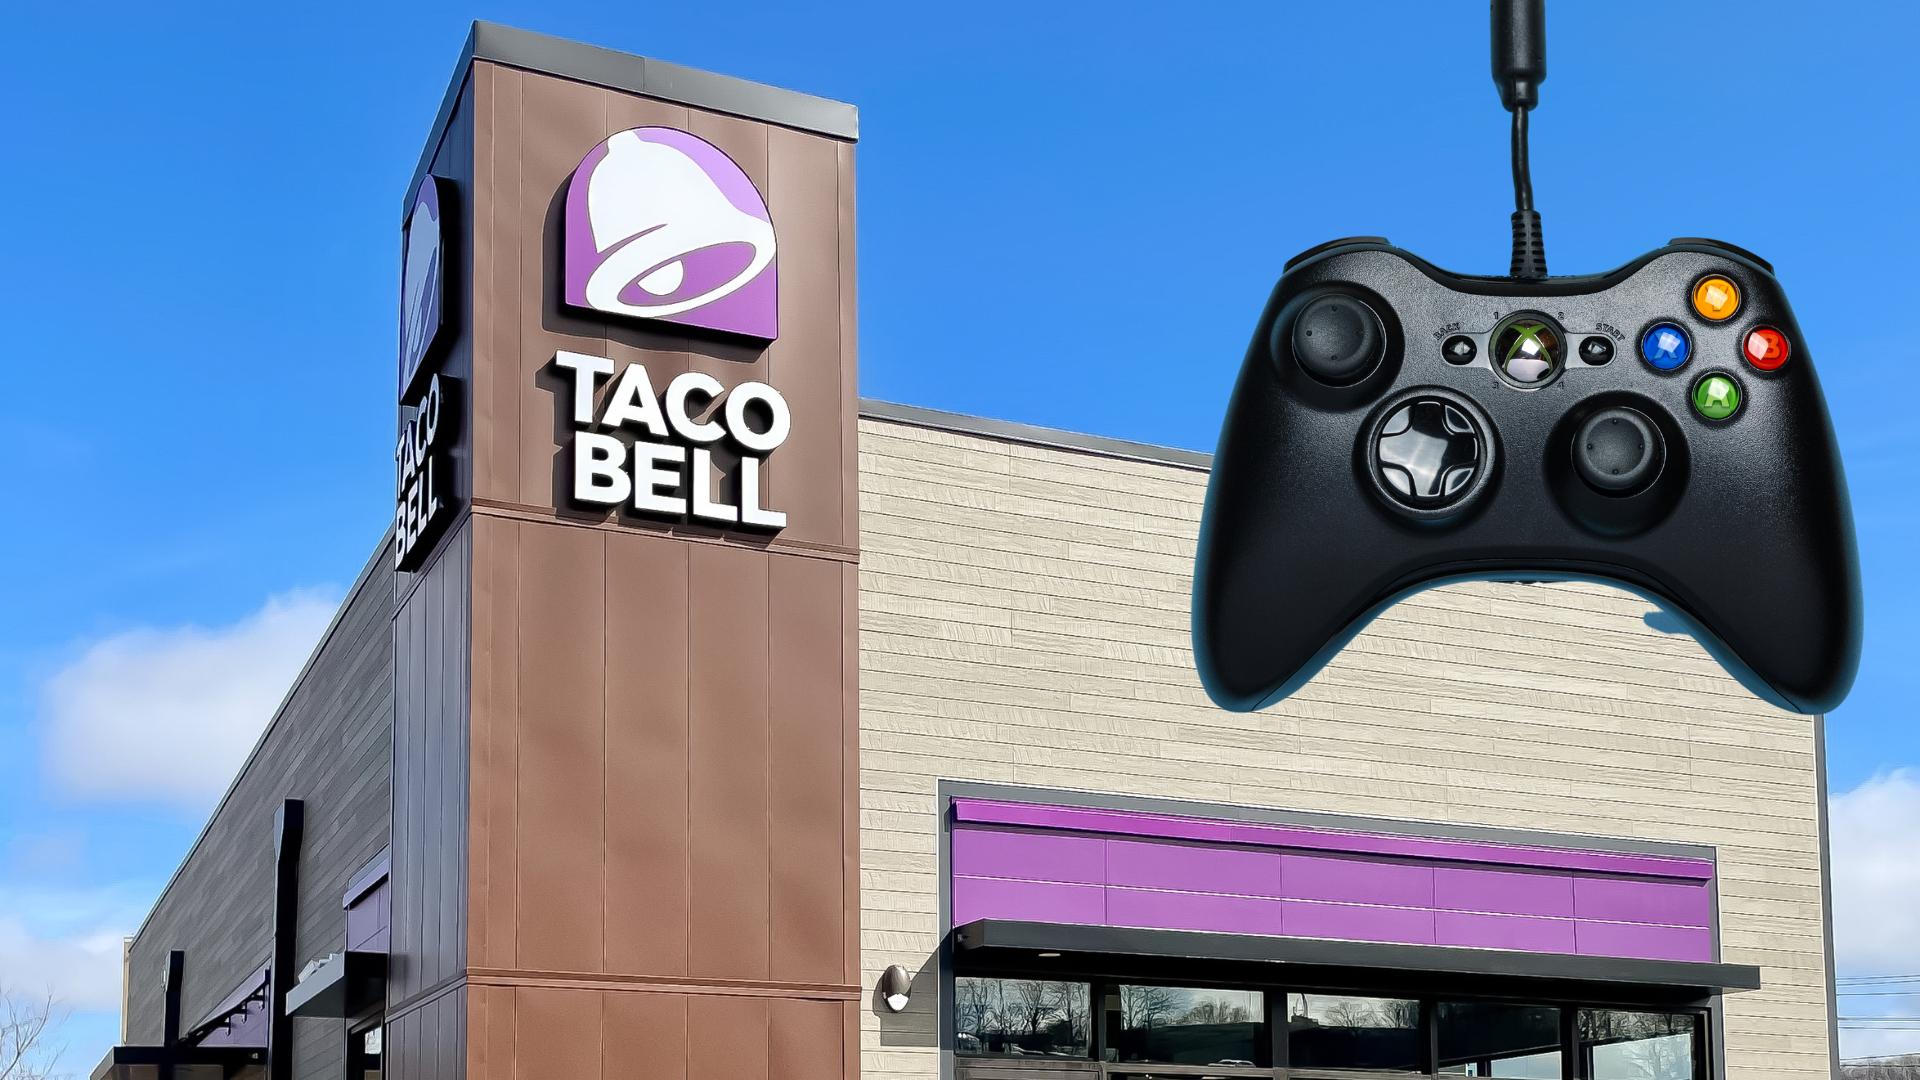 Taco Bell Restaurant und Xbox-Controller zur Darstellung der Zusammenarbeit